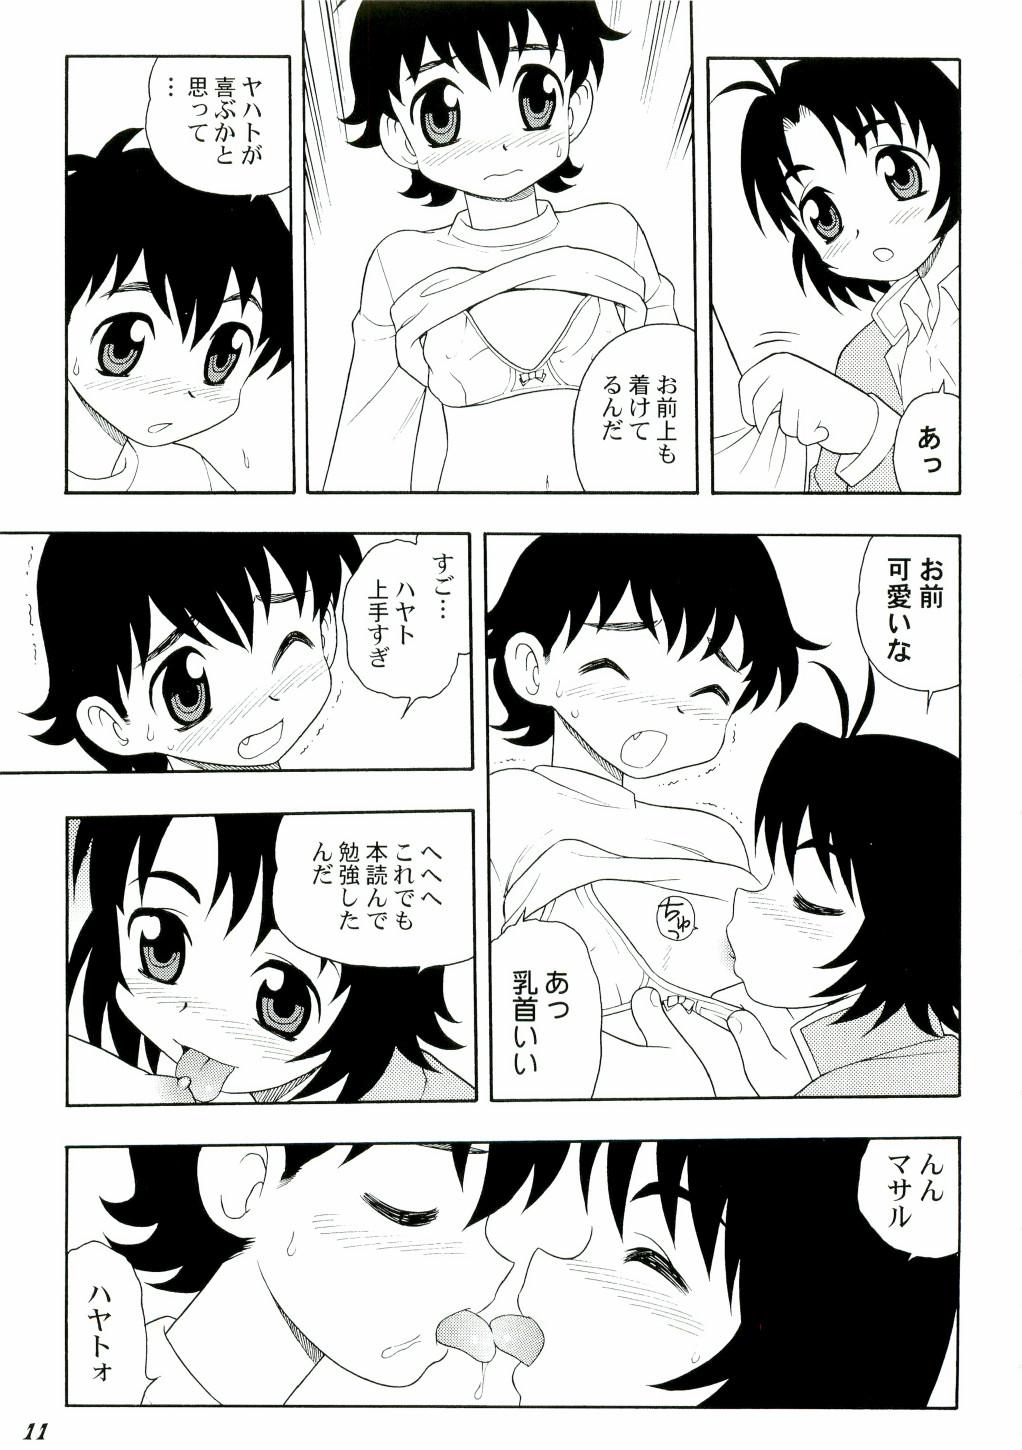 Daddy Shot a Shota 3 - Tenchi muyo Facial Cumshot - Page 11